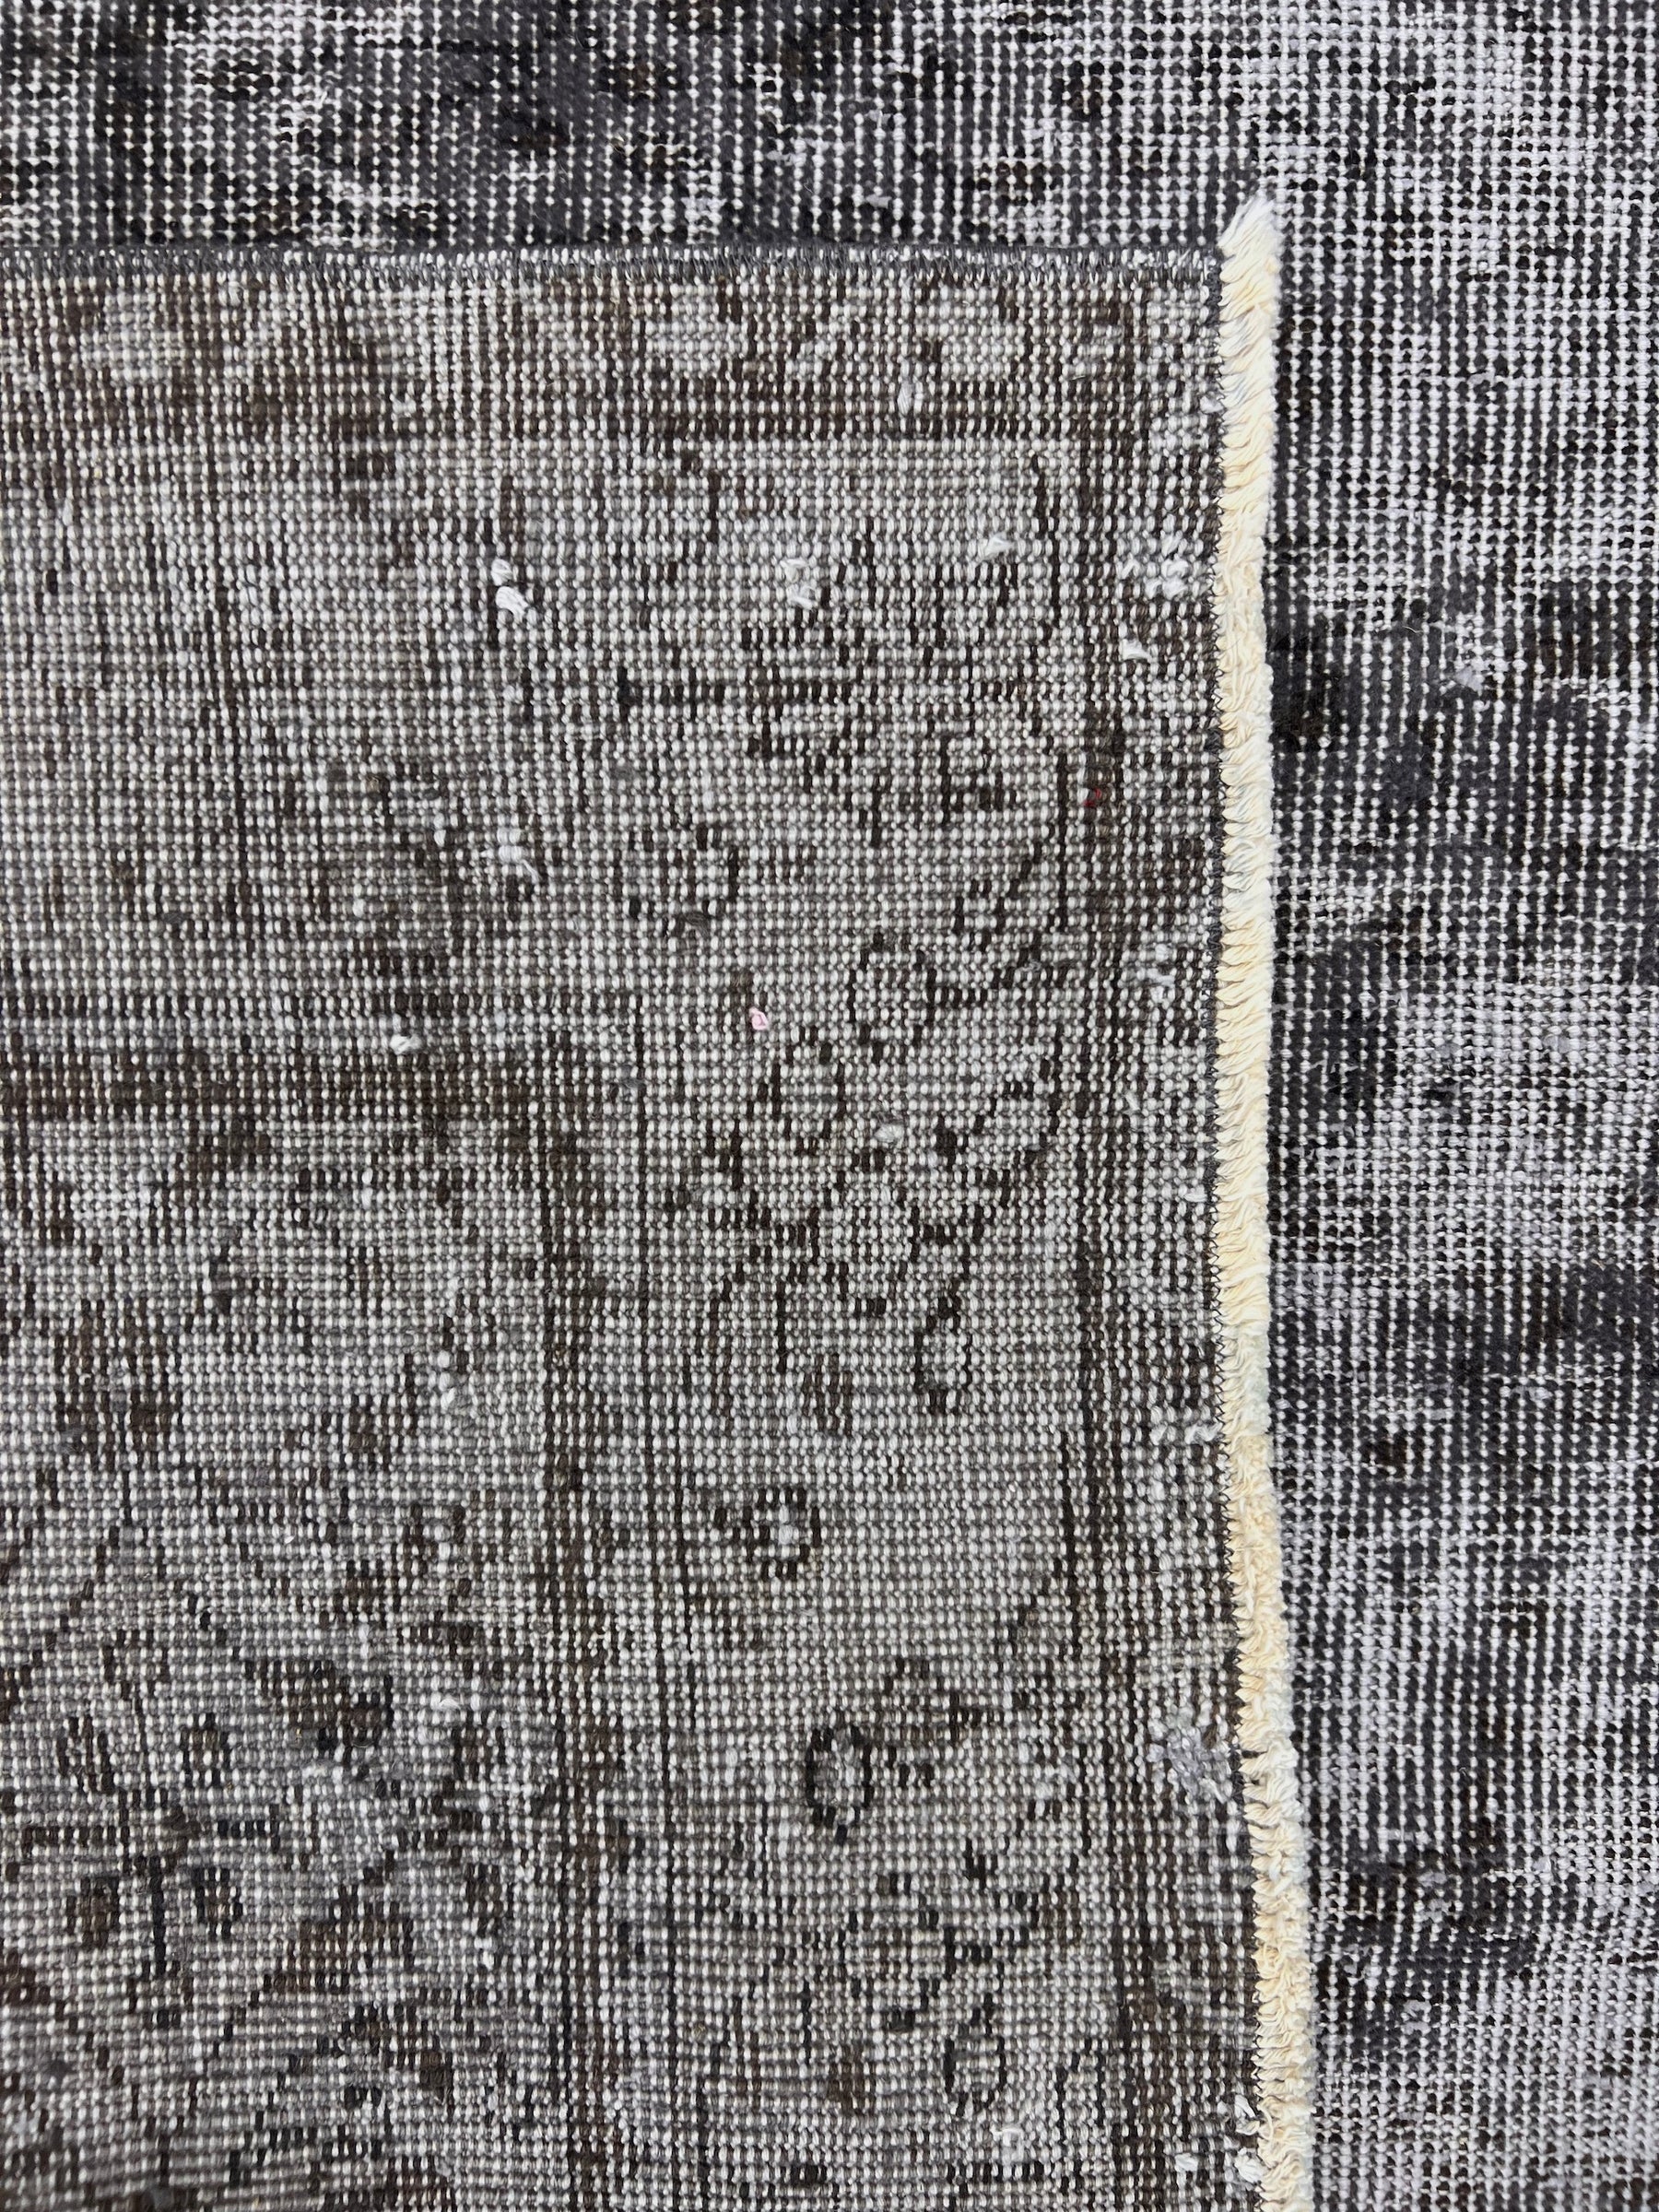 Tuhina - Vintage Gray Overdyed Rug - kudenrugs